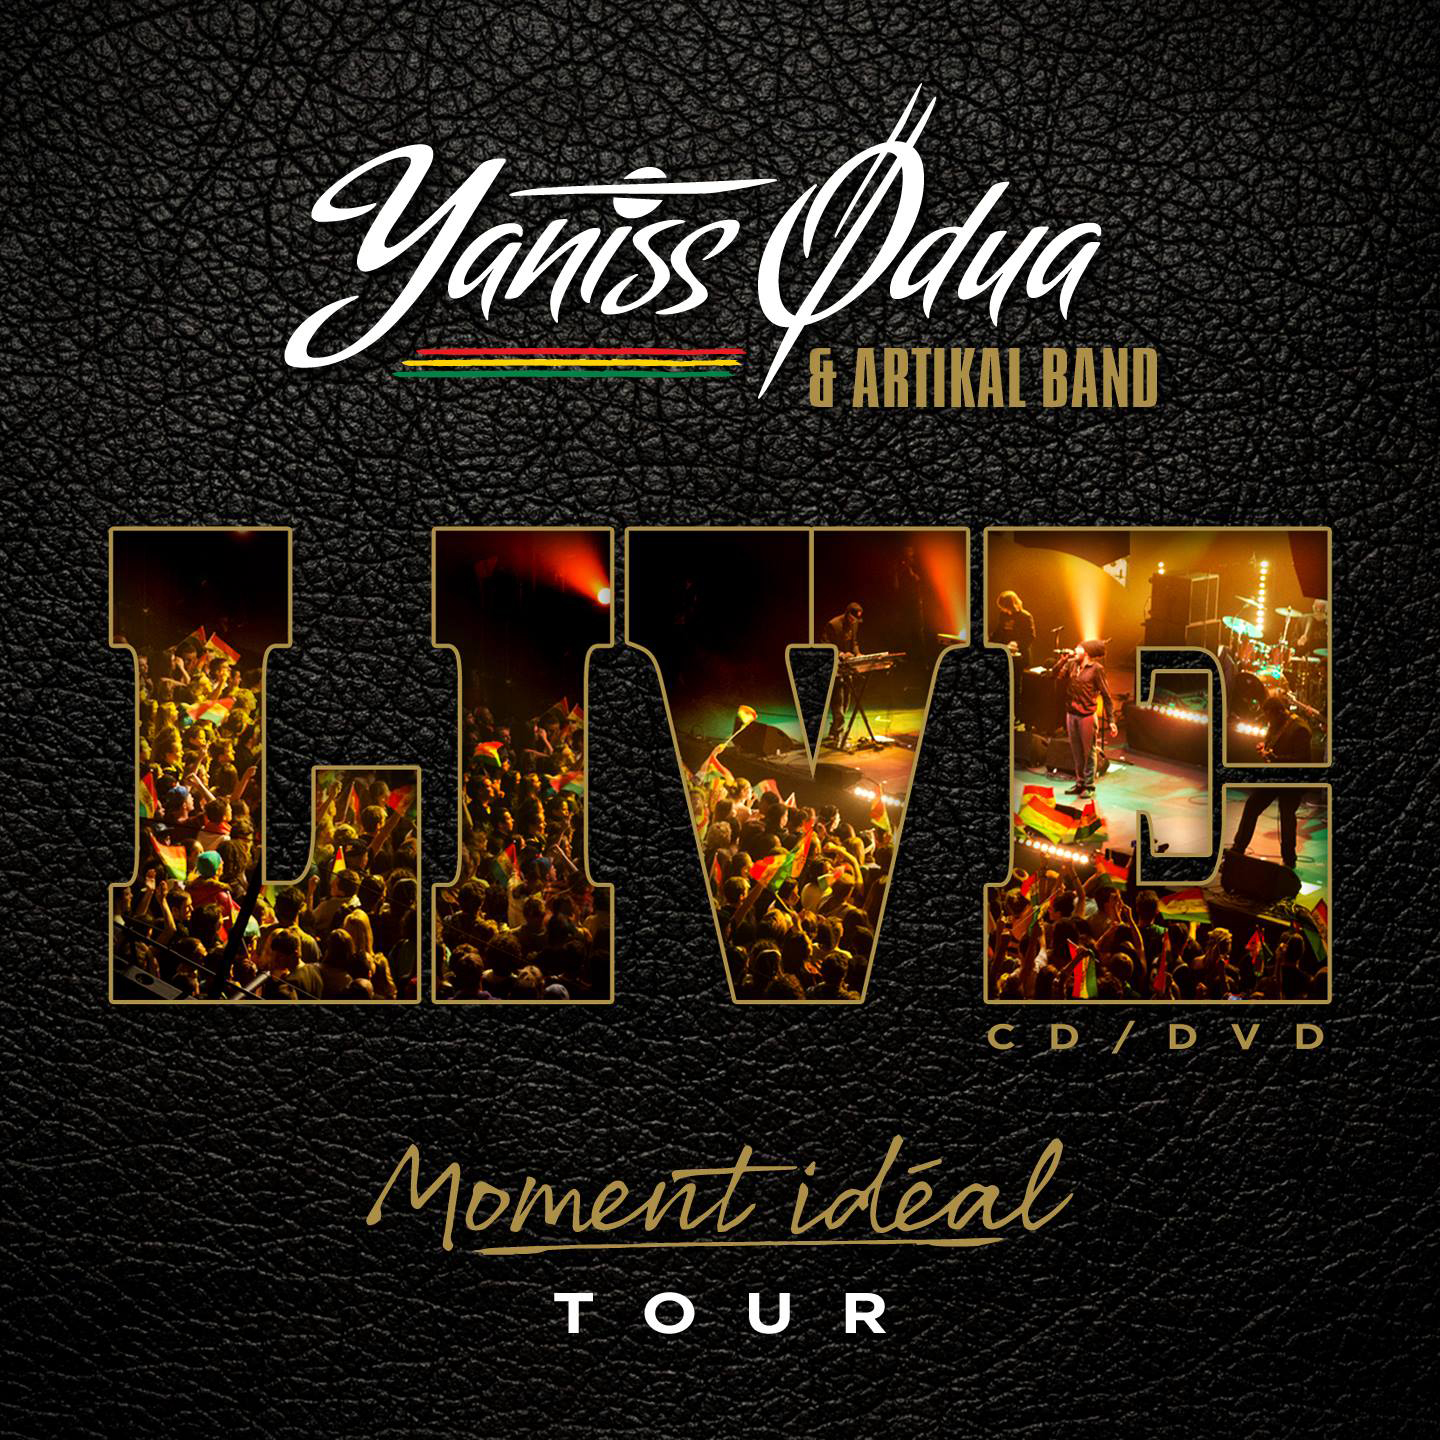 Cover du CD/DVD Yaniss Odua Live - Moment Ideal Tour. Réalisé par Loseou